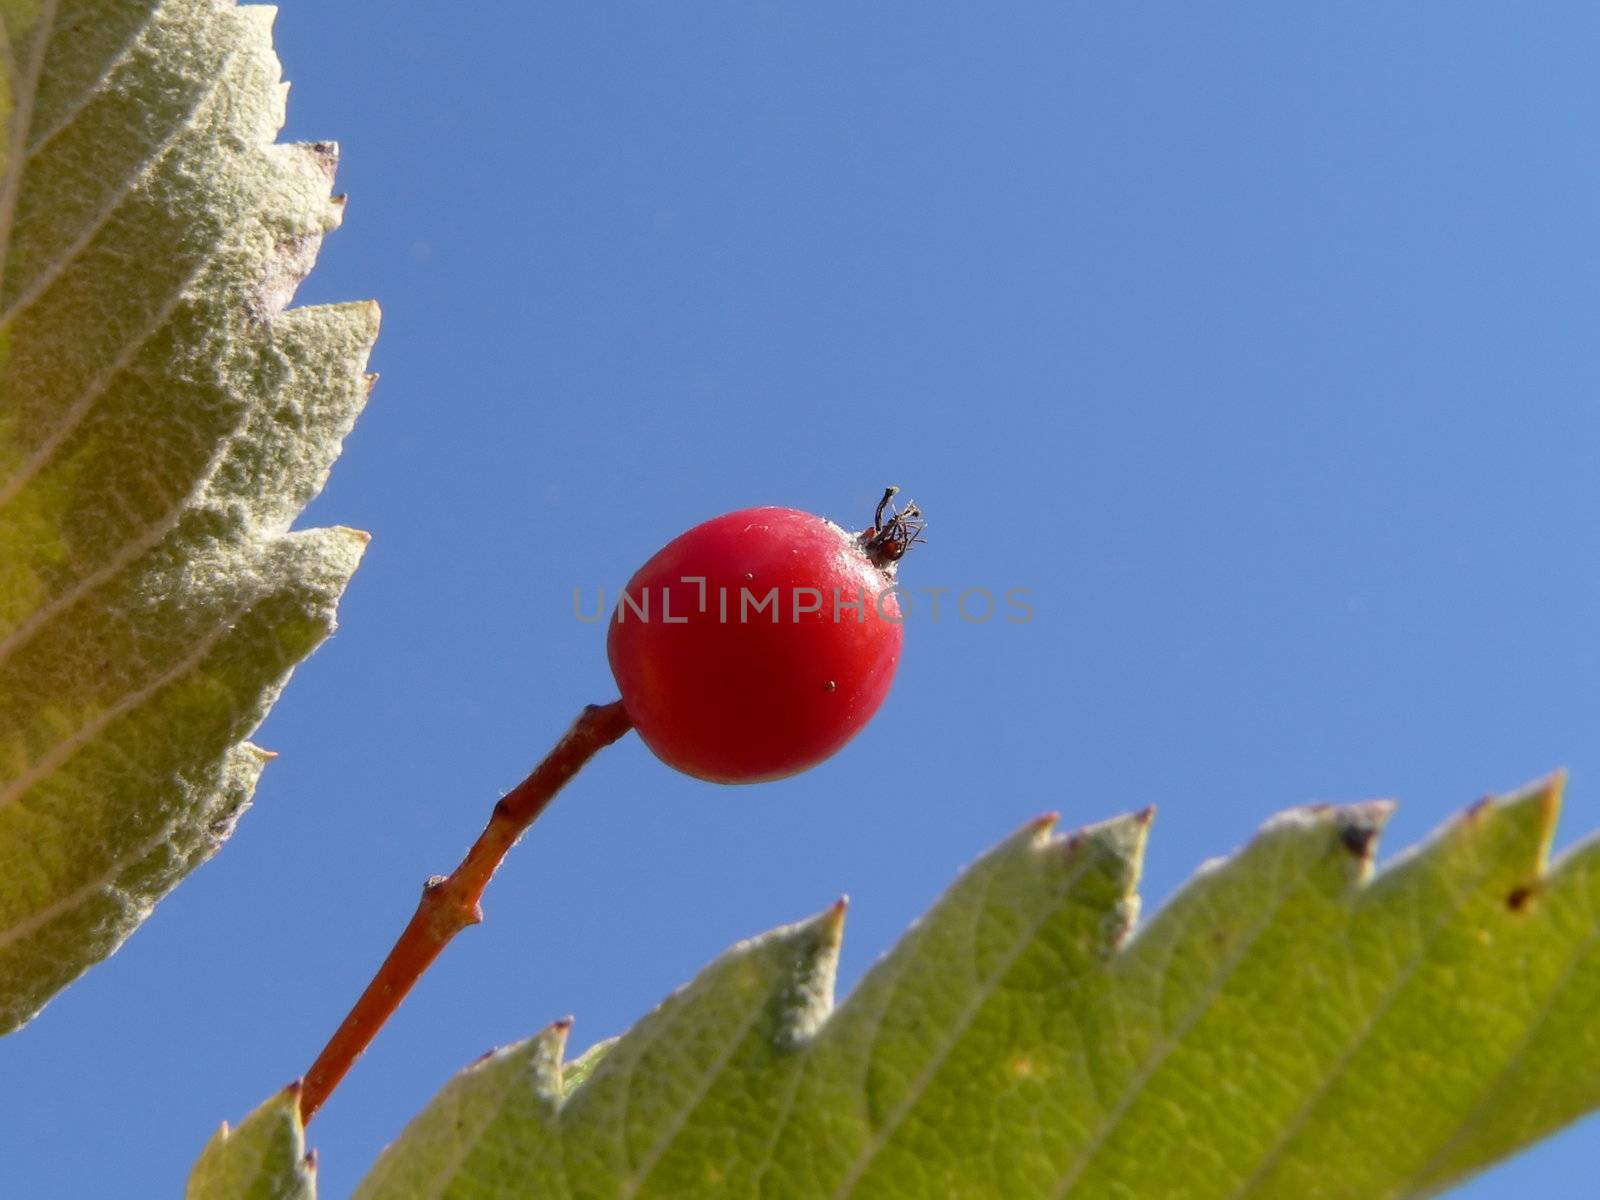 Autumn berry 2 by ichip